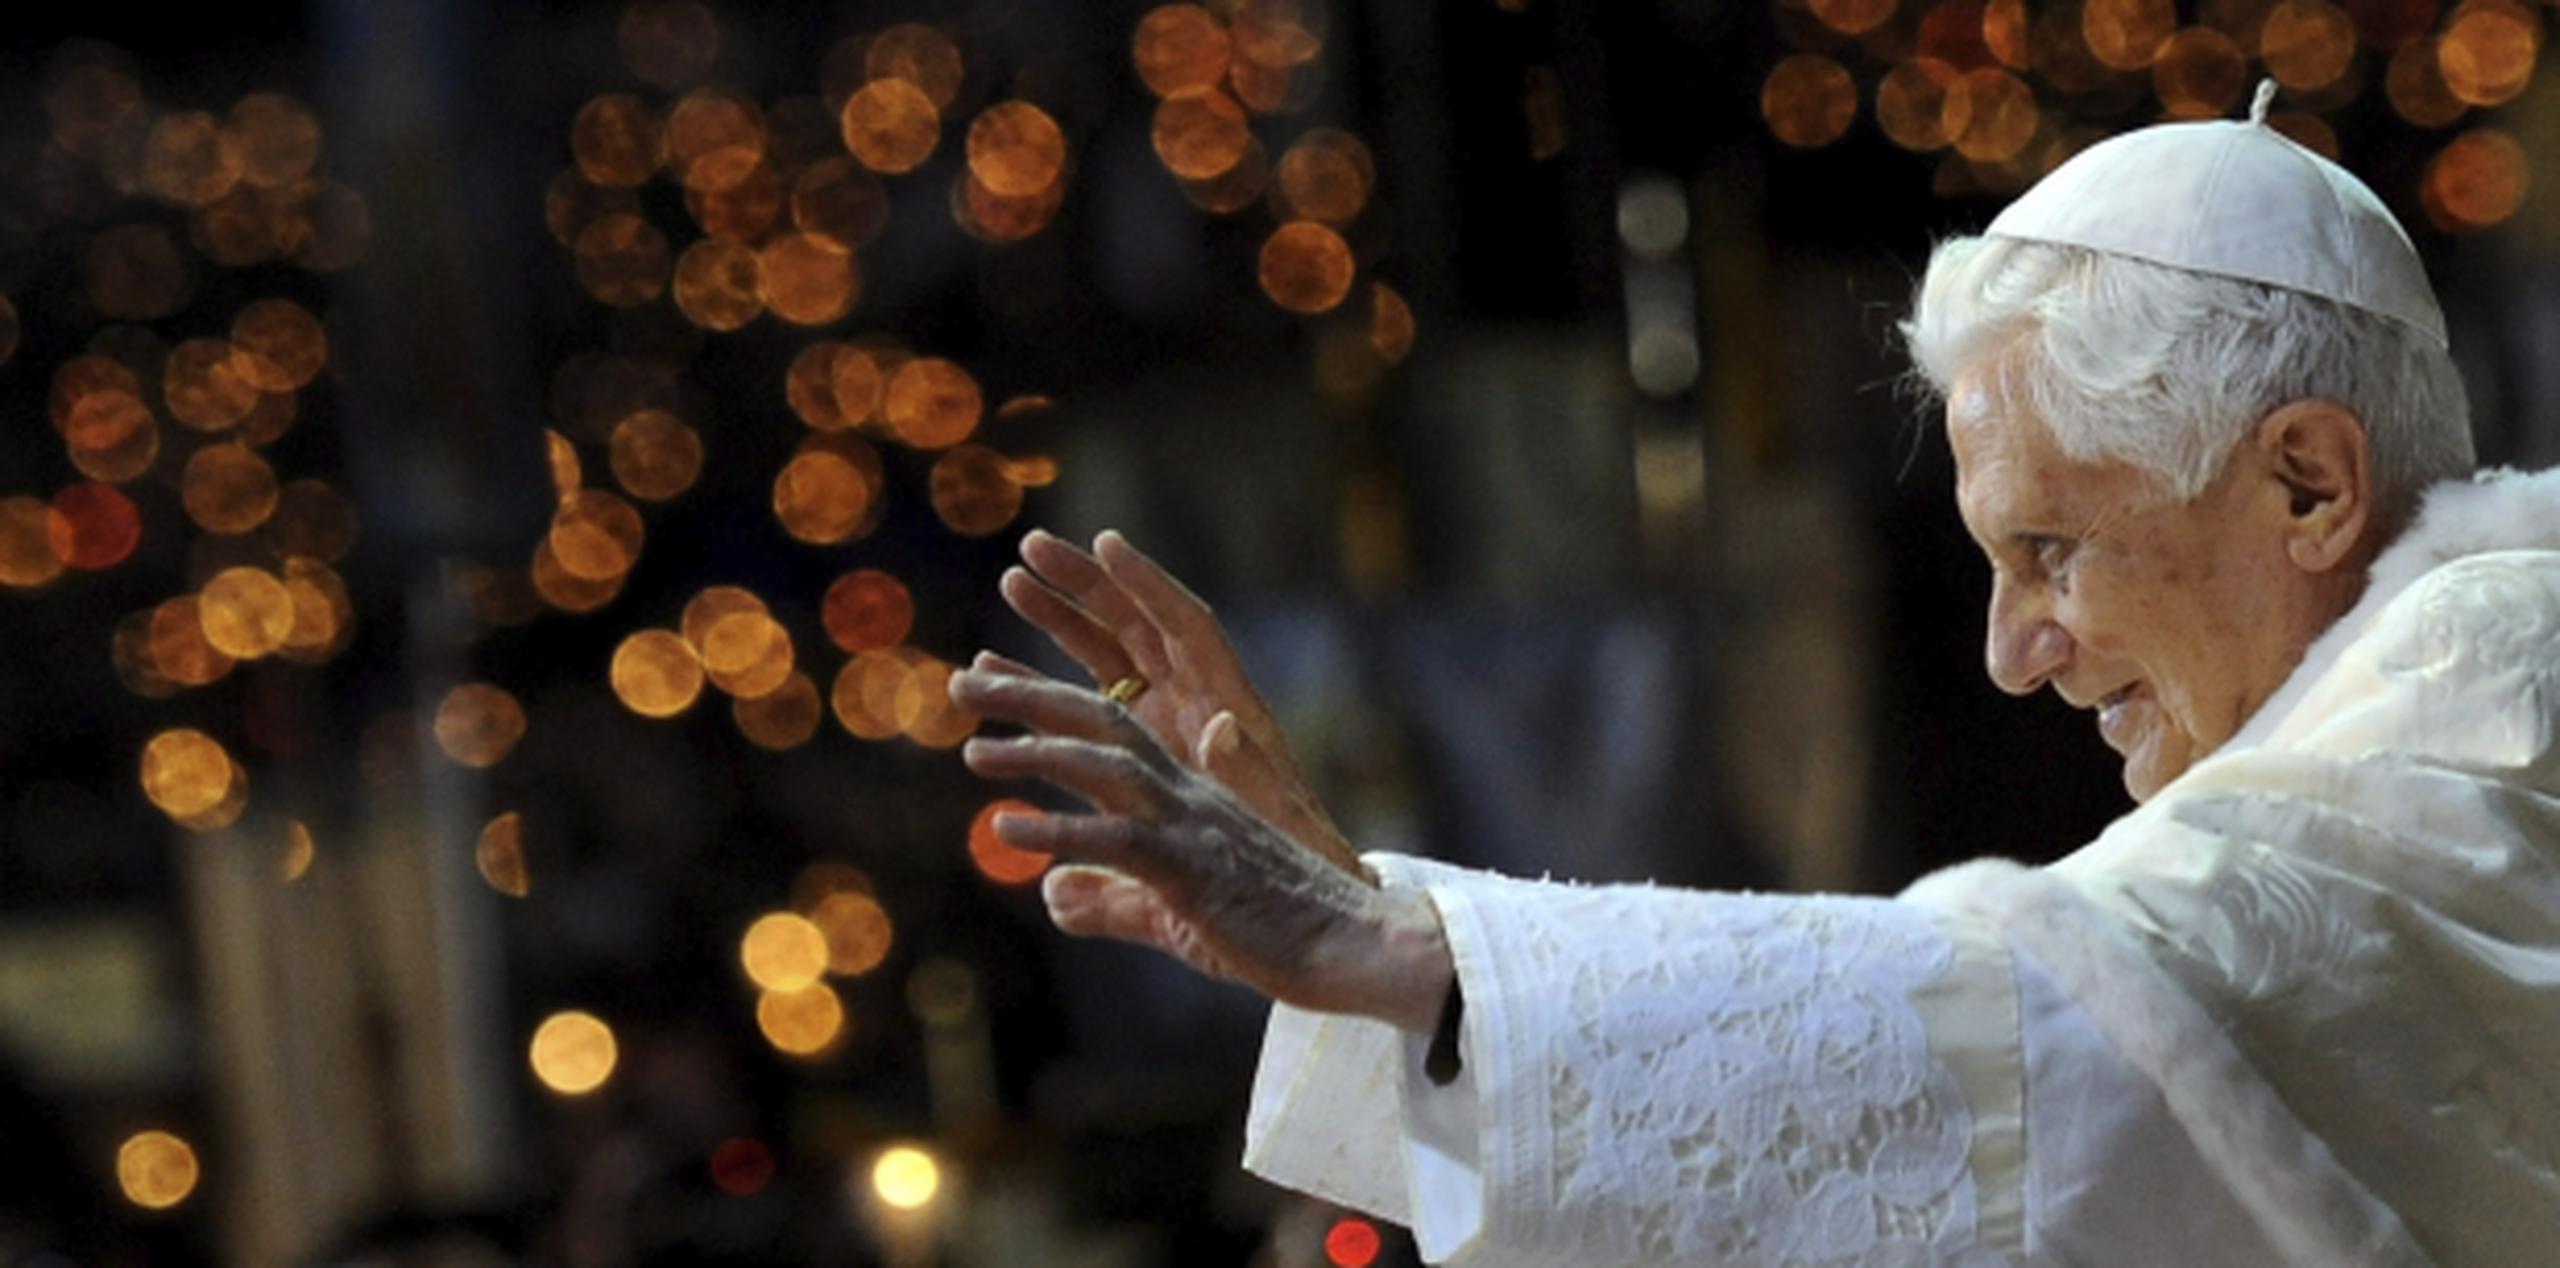 Benedicto XVI se mueve a veces gracias a un andador para "sentirse más seguro y autónomo". (EFE / Ettore Ferrari)